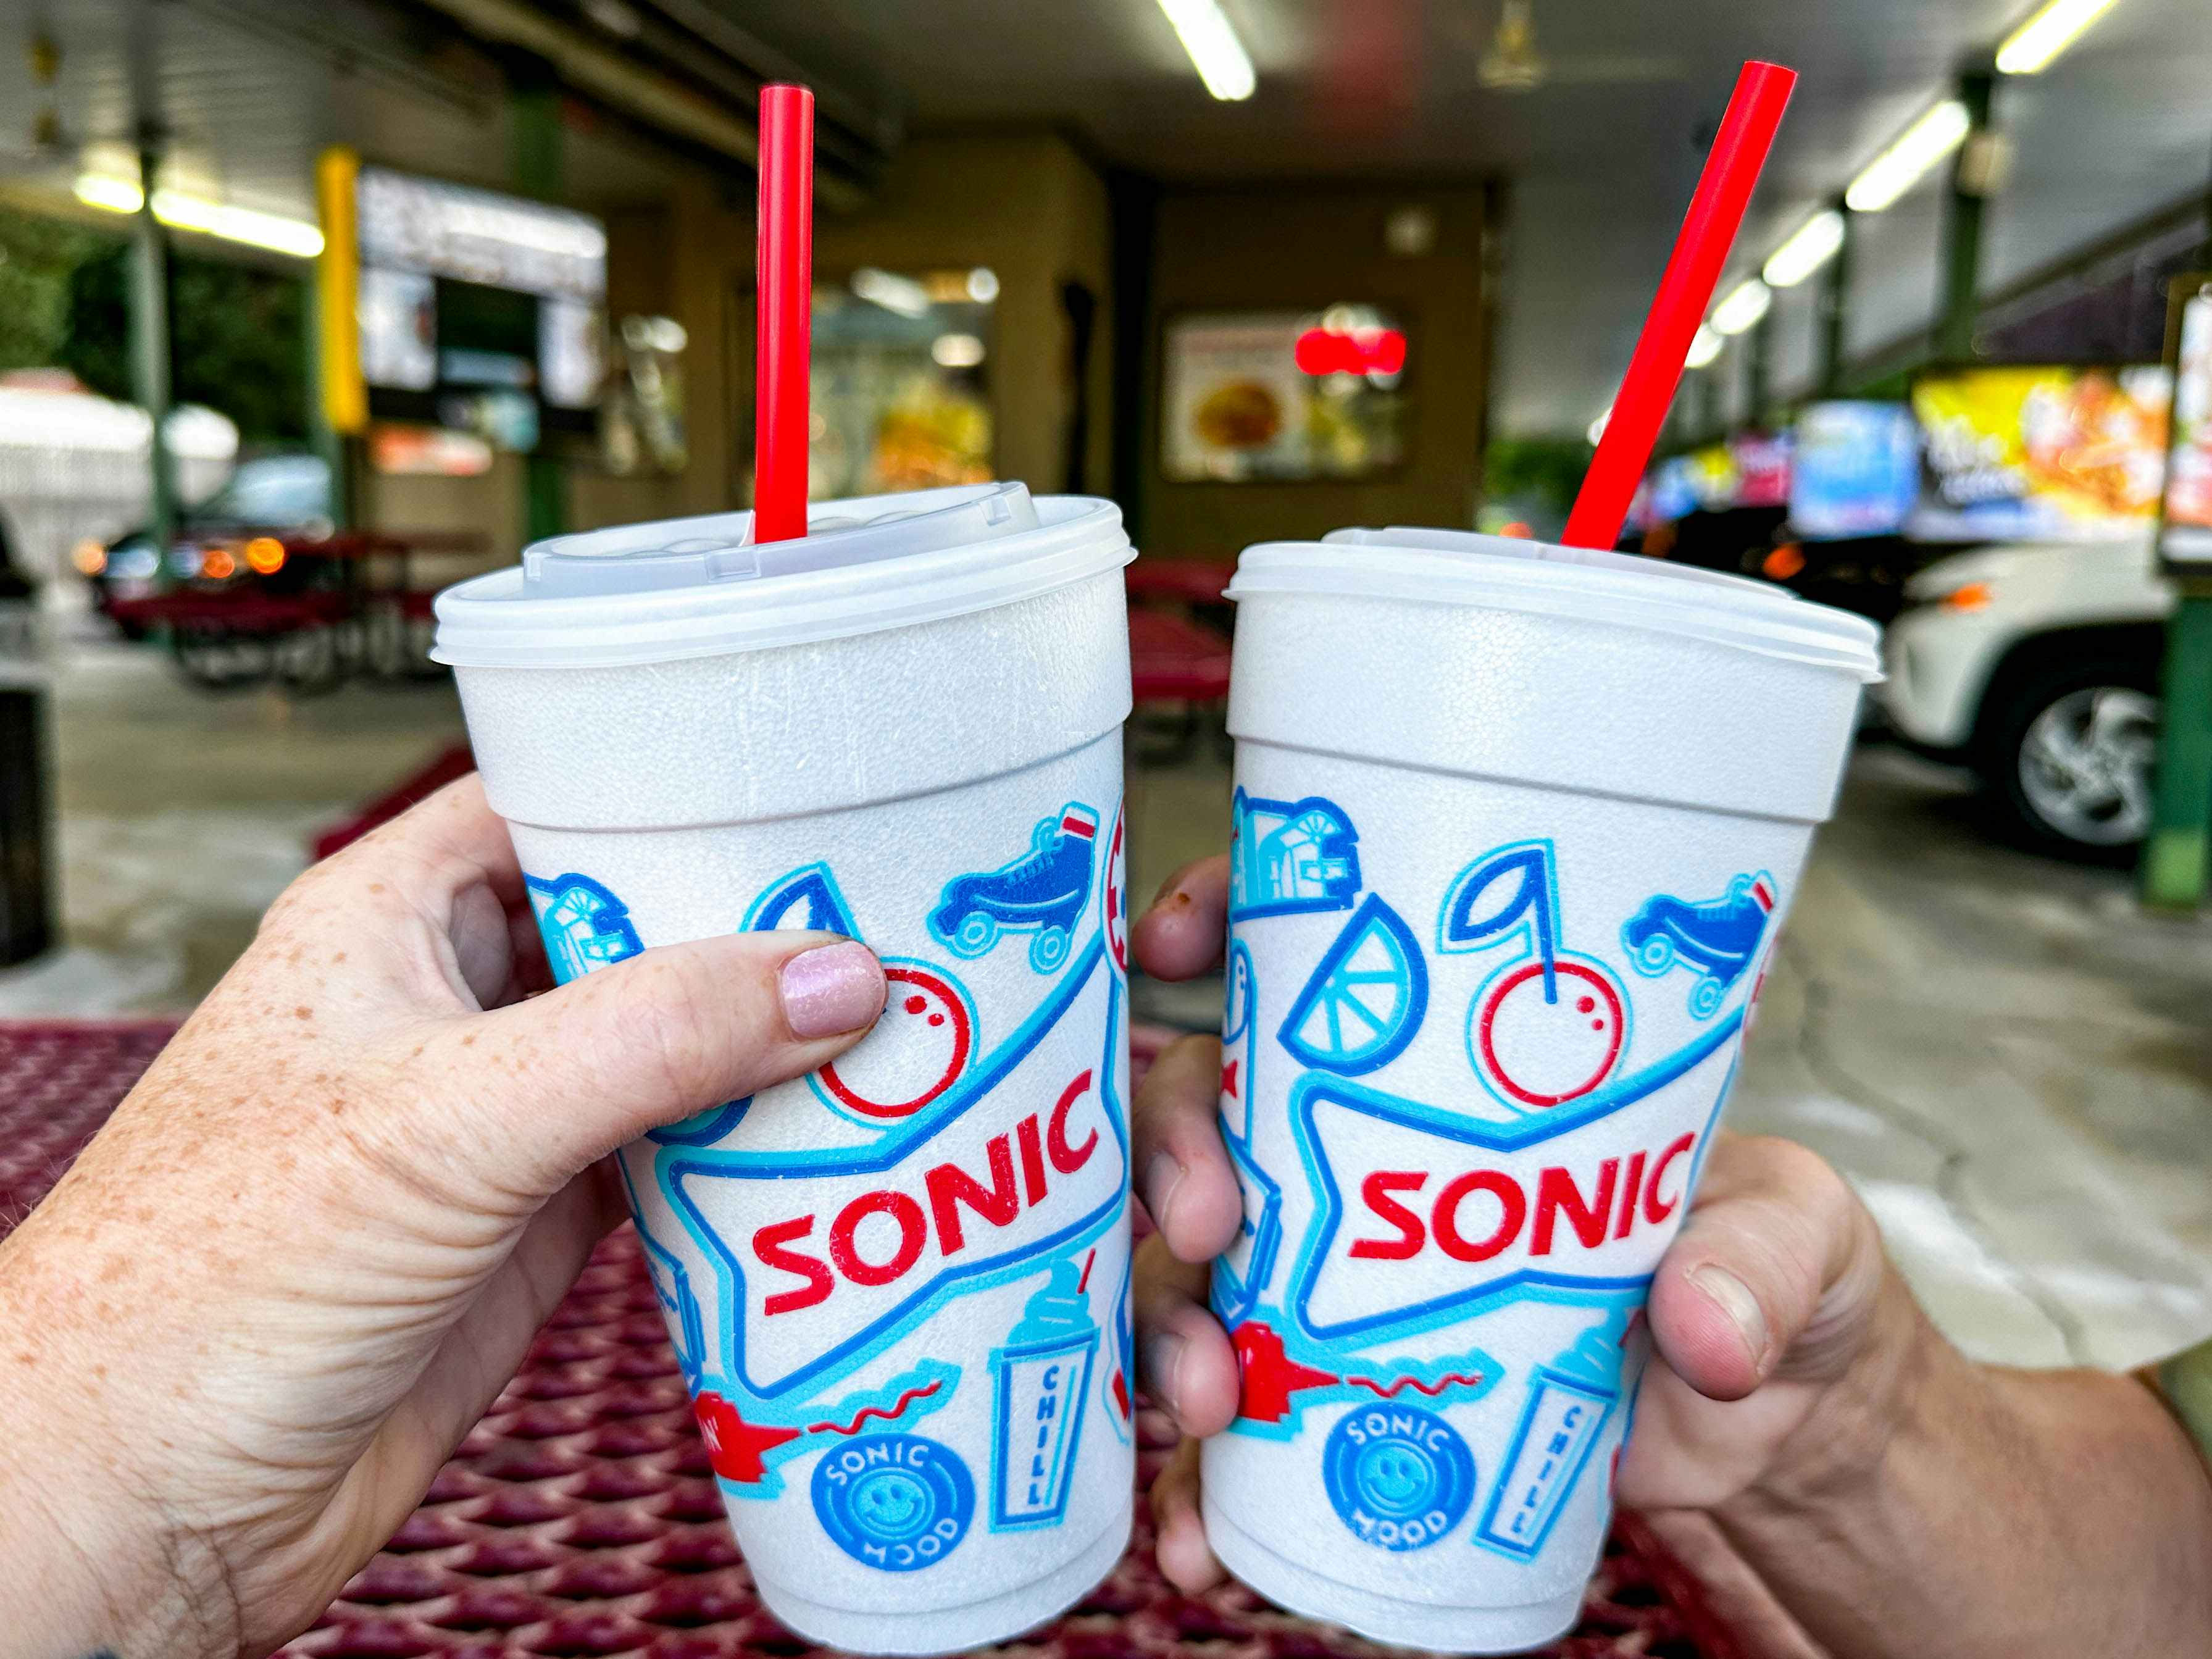 Sonic Drink Menu! in 2023  Sonic drinks, Drink menu, Diet drinks